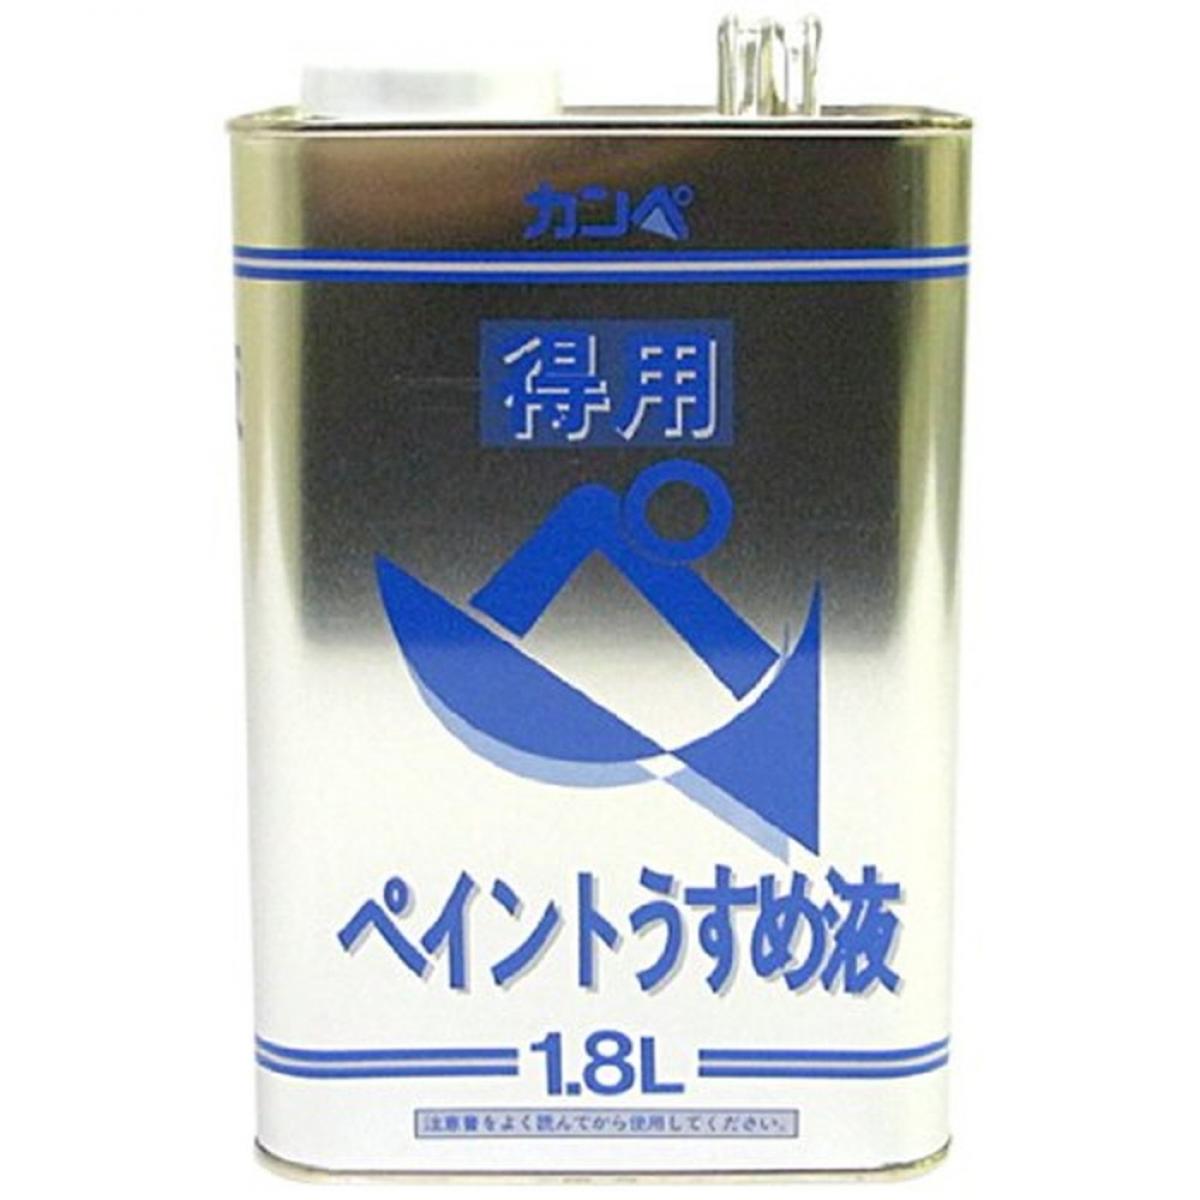 オープニング 【74%OFF!】 カンペハピオ 得用ペイントうすめ液 1.8L